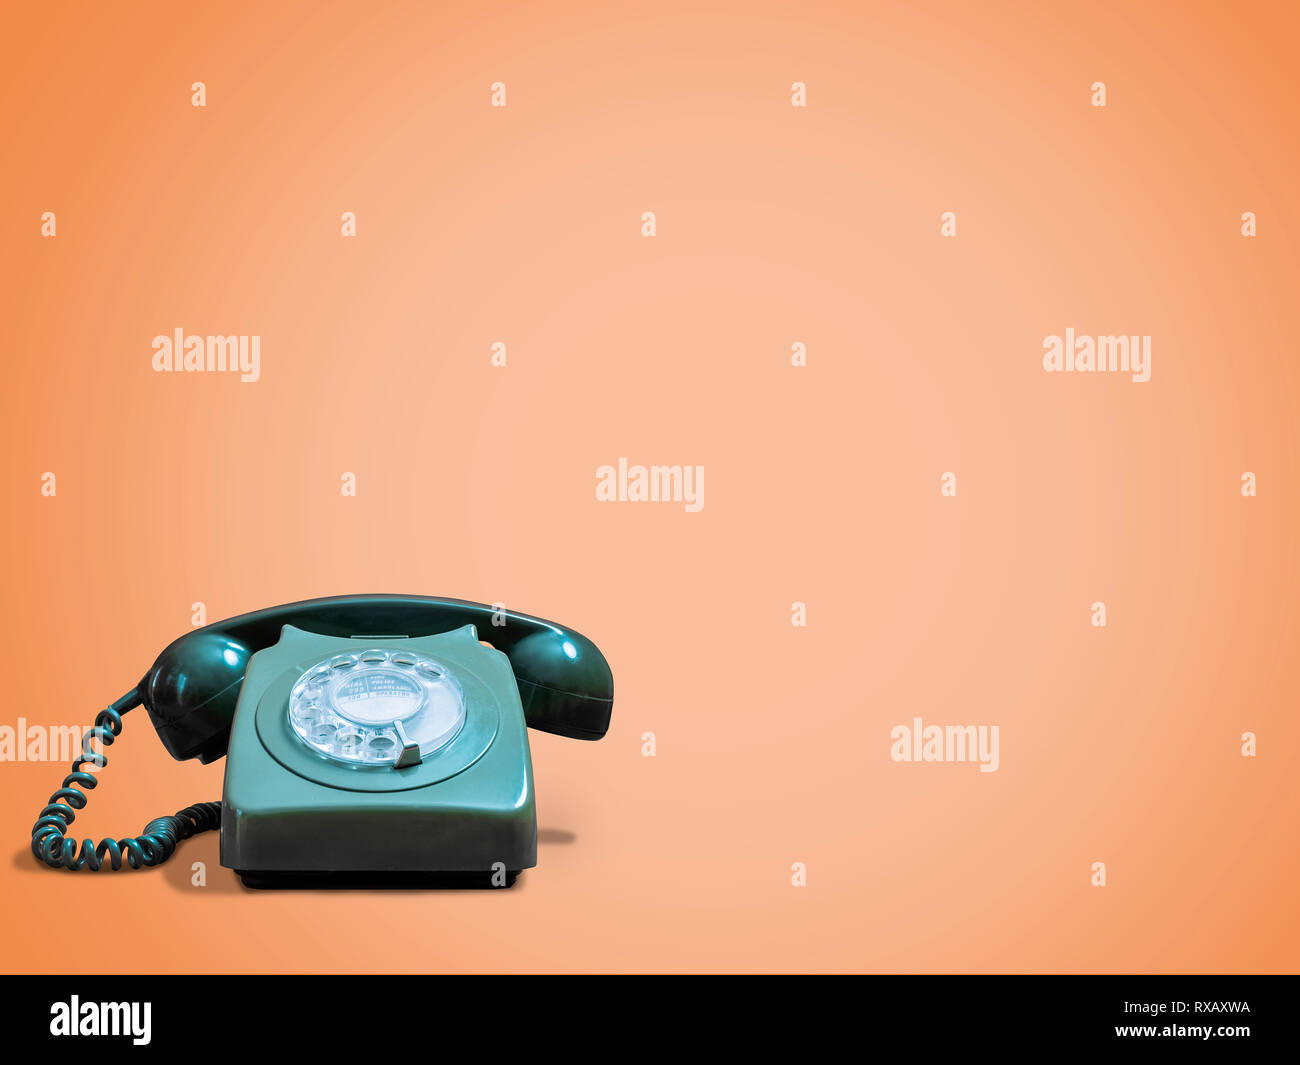 Vintage telephone against orange background Stock Photo